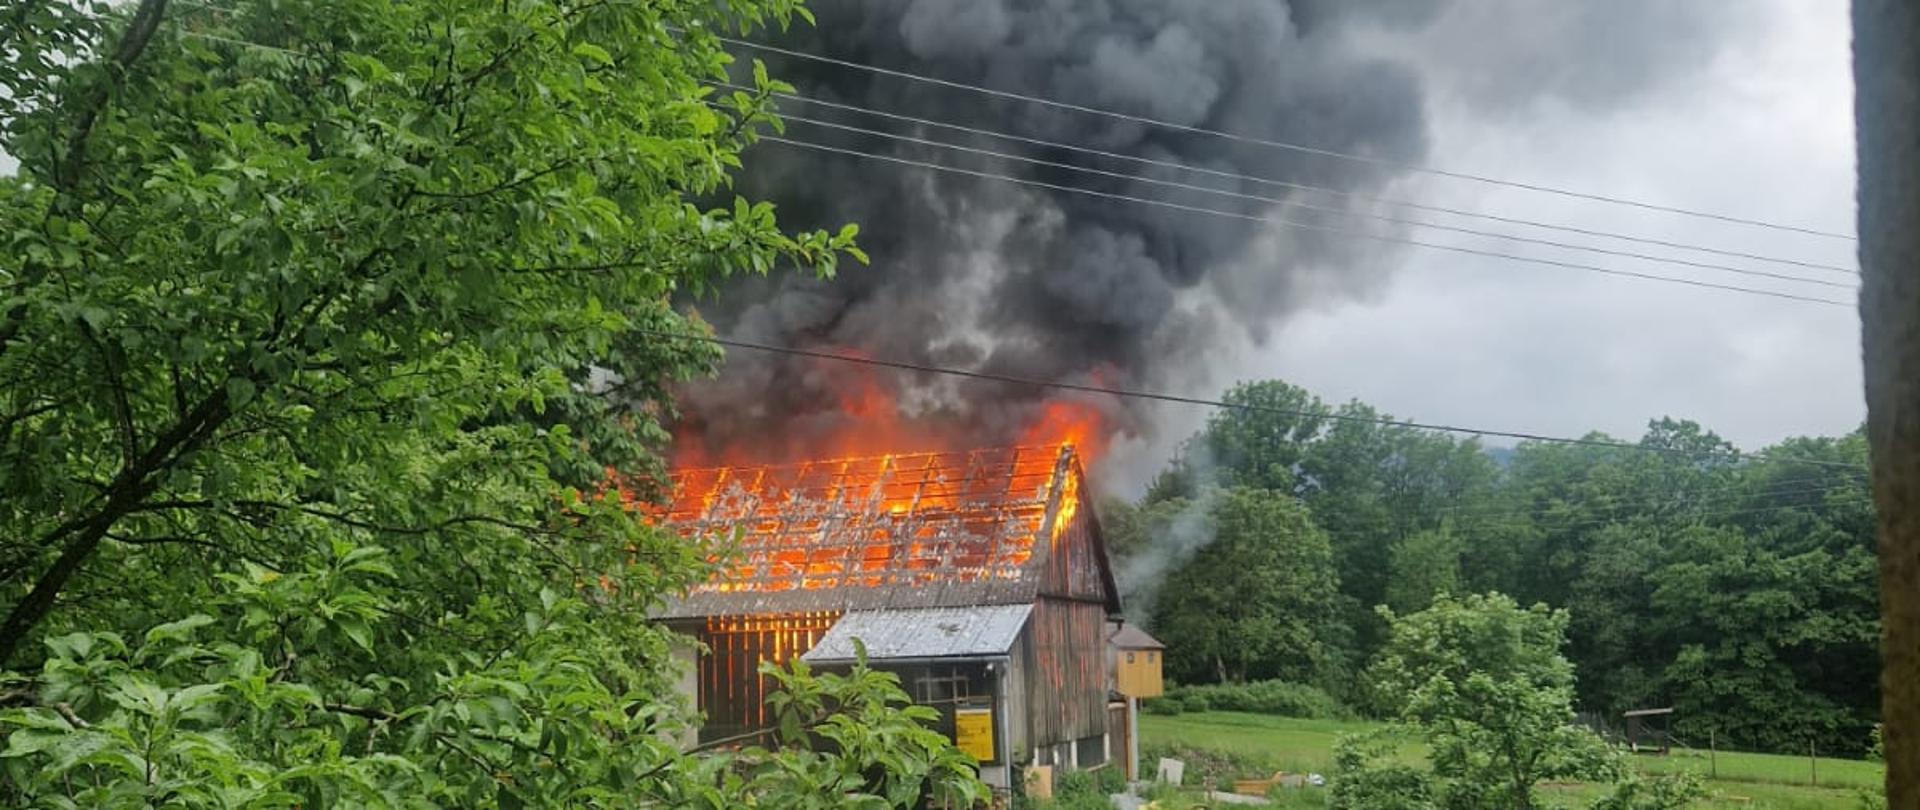 Płonący budynek gospodarczy. Płomienie wychodzą ponad dach.